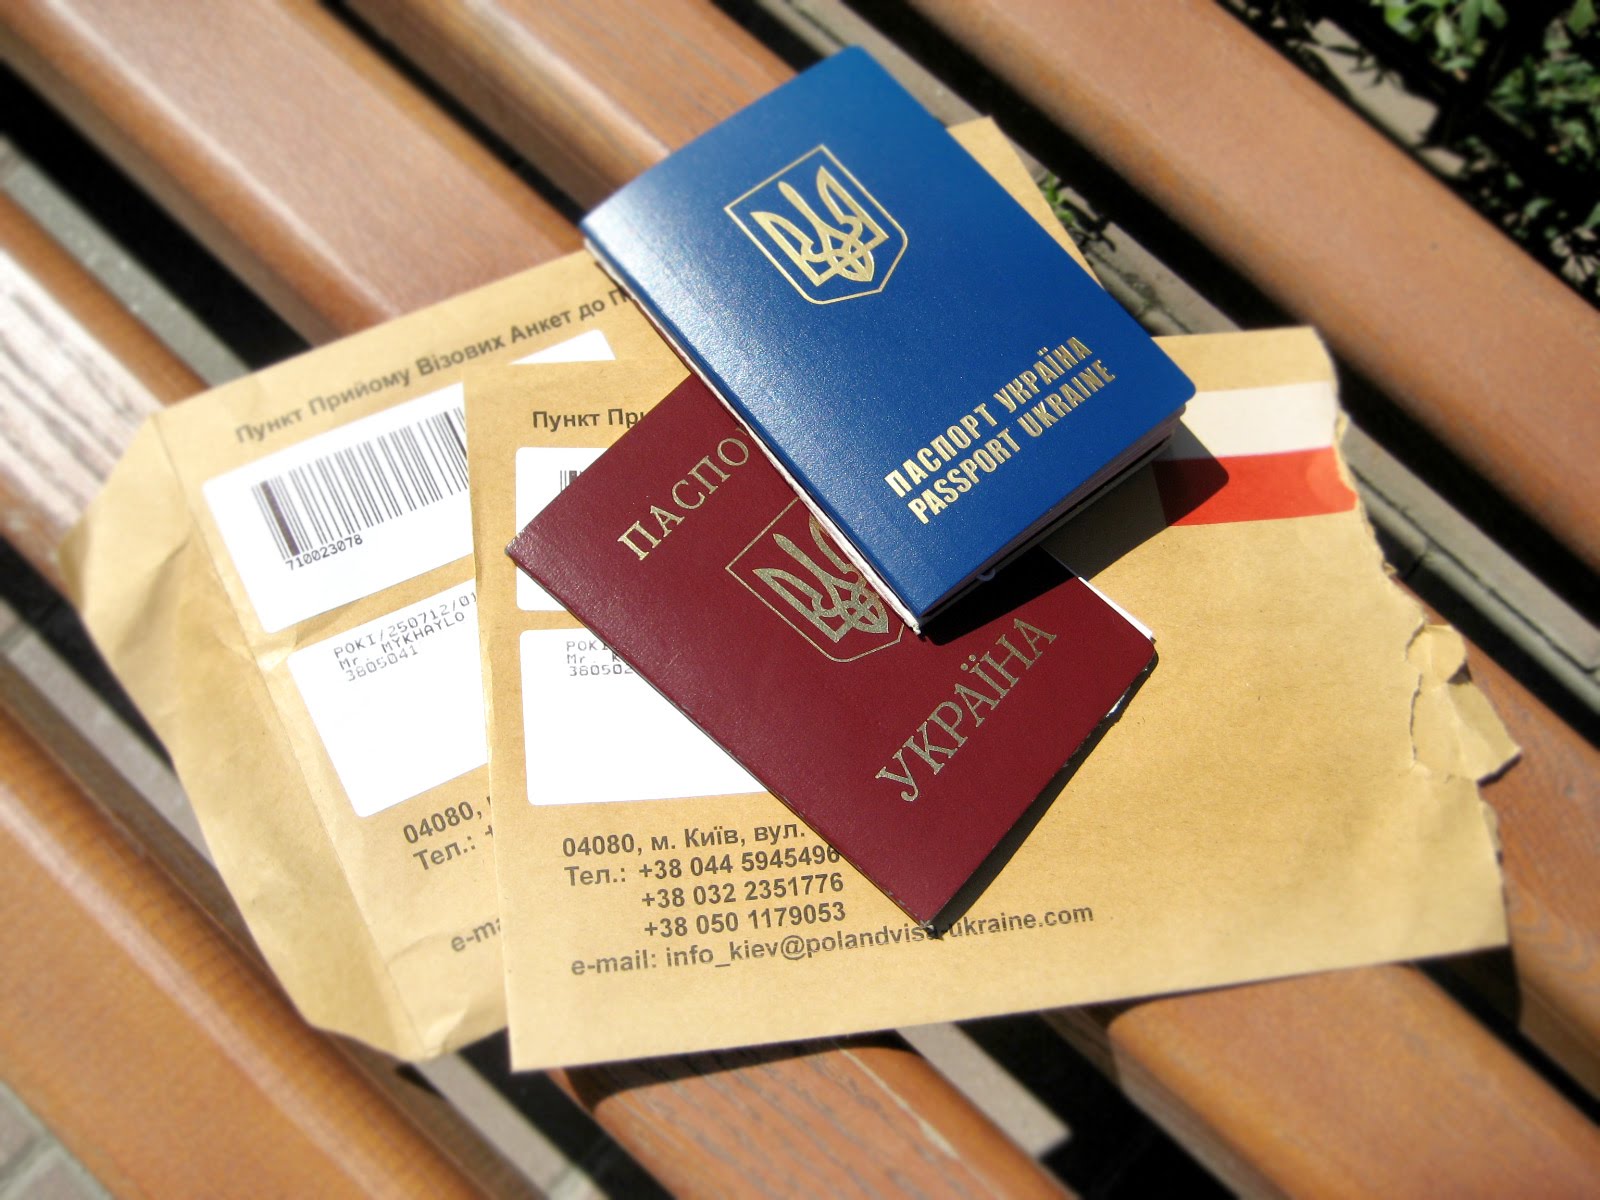 Dự báo tại Balan sẽ có nhiều trường hợp người Ukraine bị từ chối nhập cảnh khi bắt đầu chế độ miễn visa.